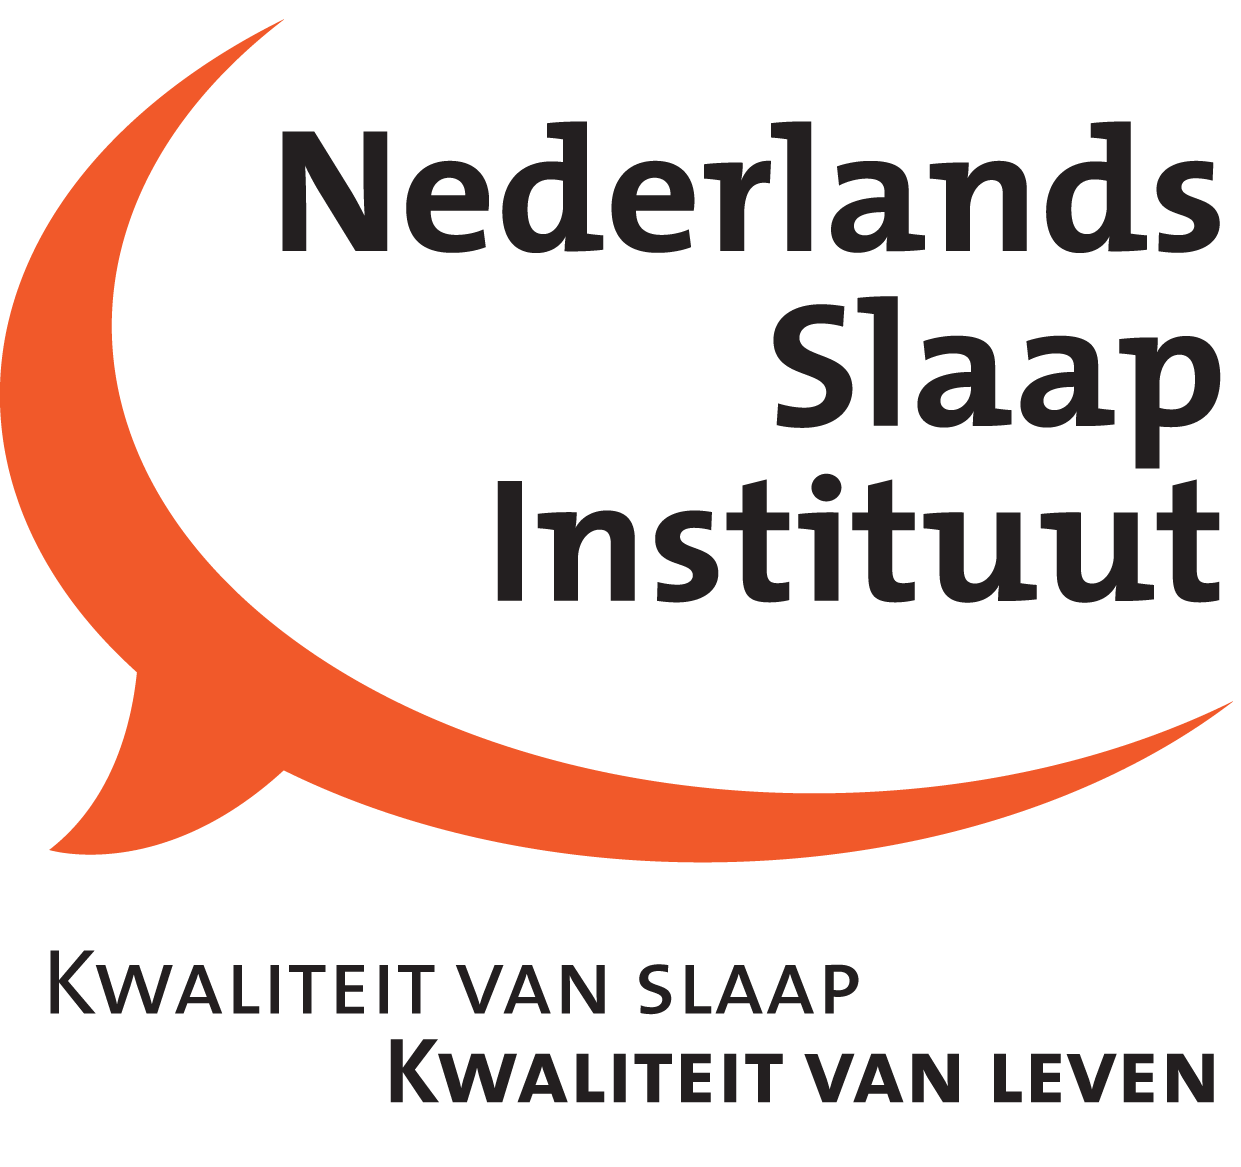 Nsi login logo 1 Apneuvereniging nl